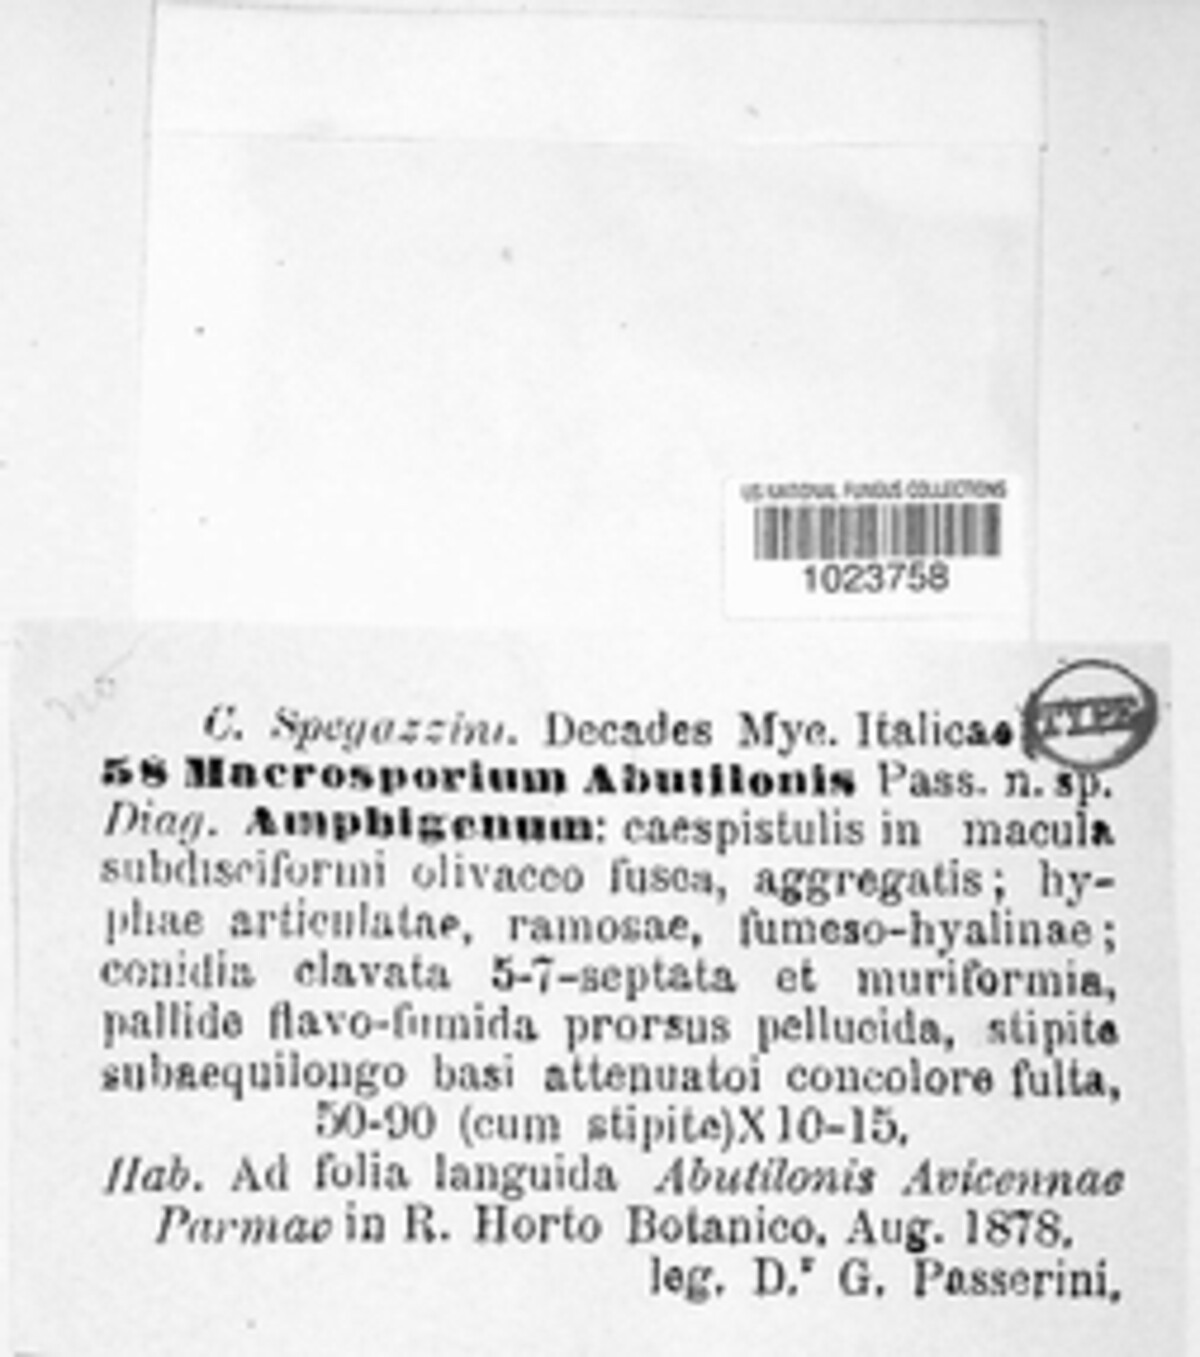 Macrosporium abutilonis image